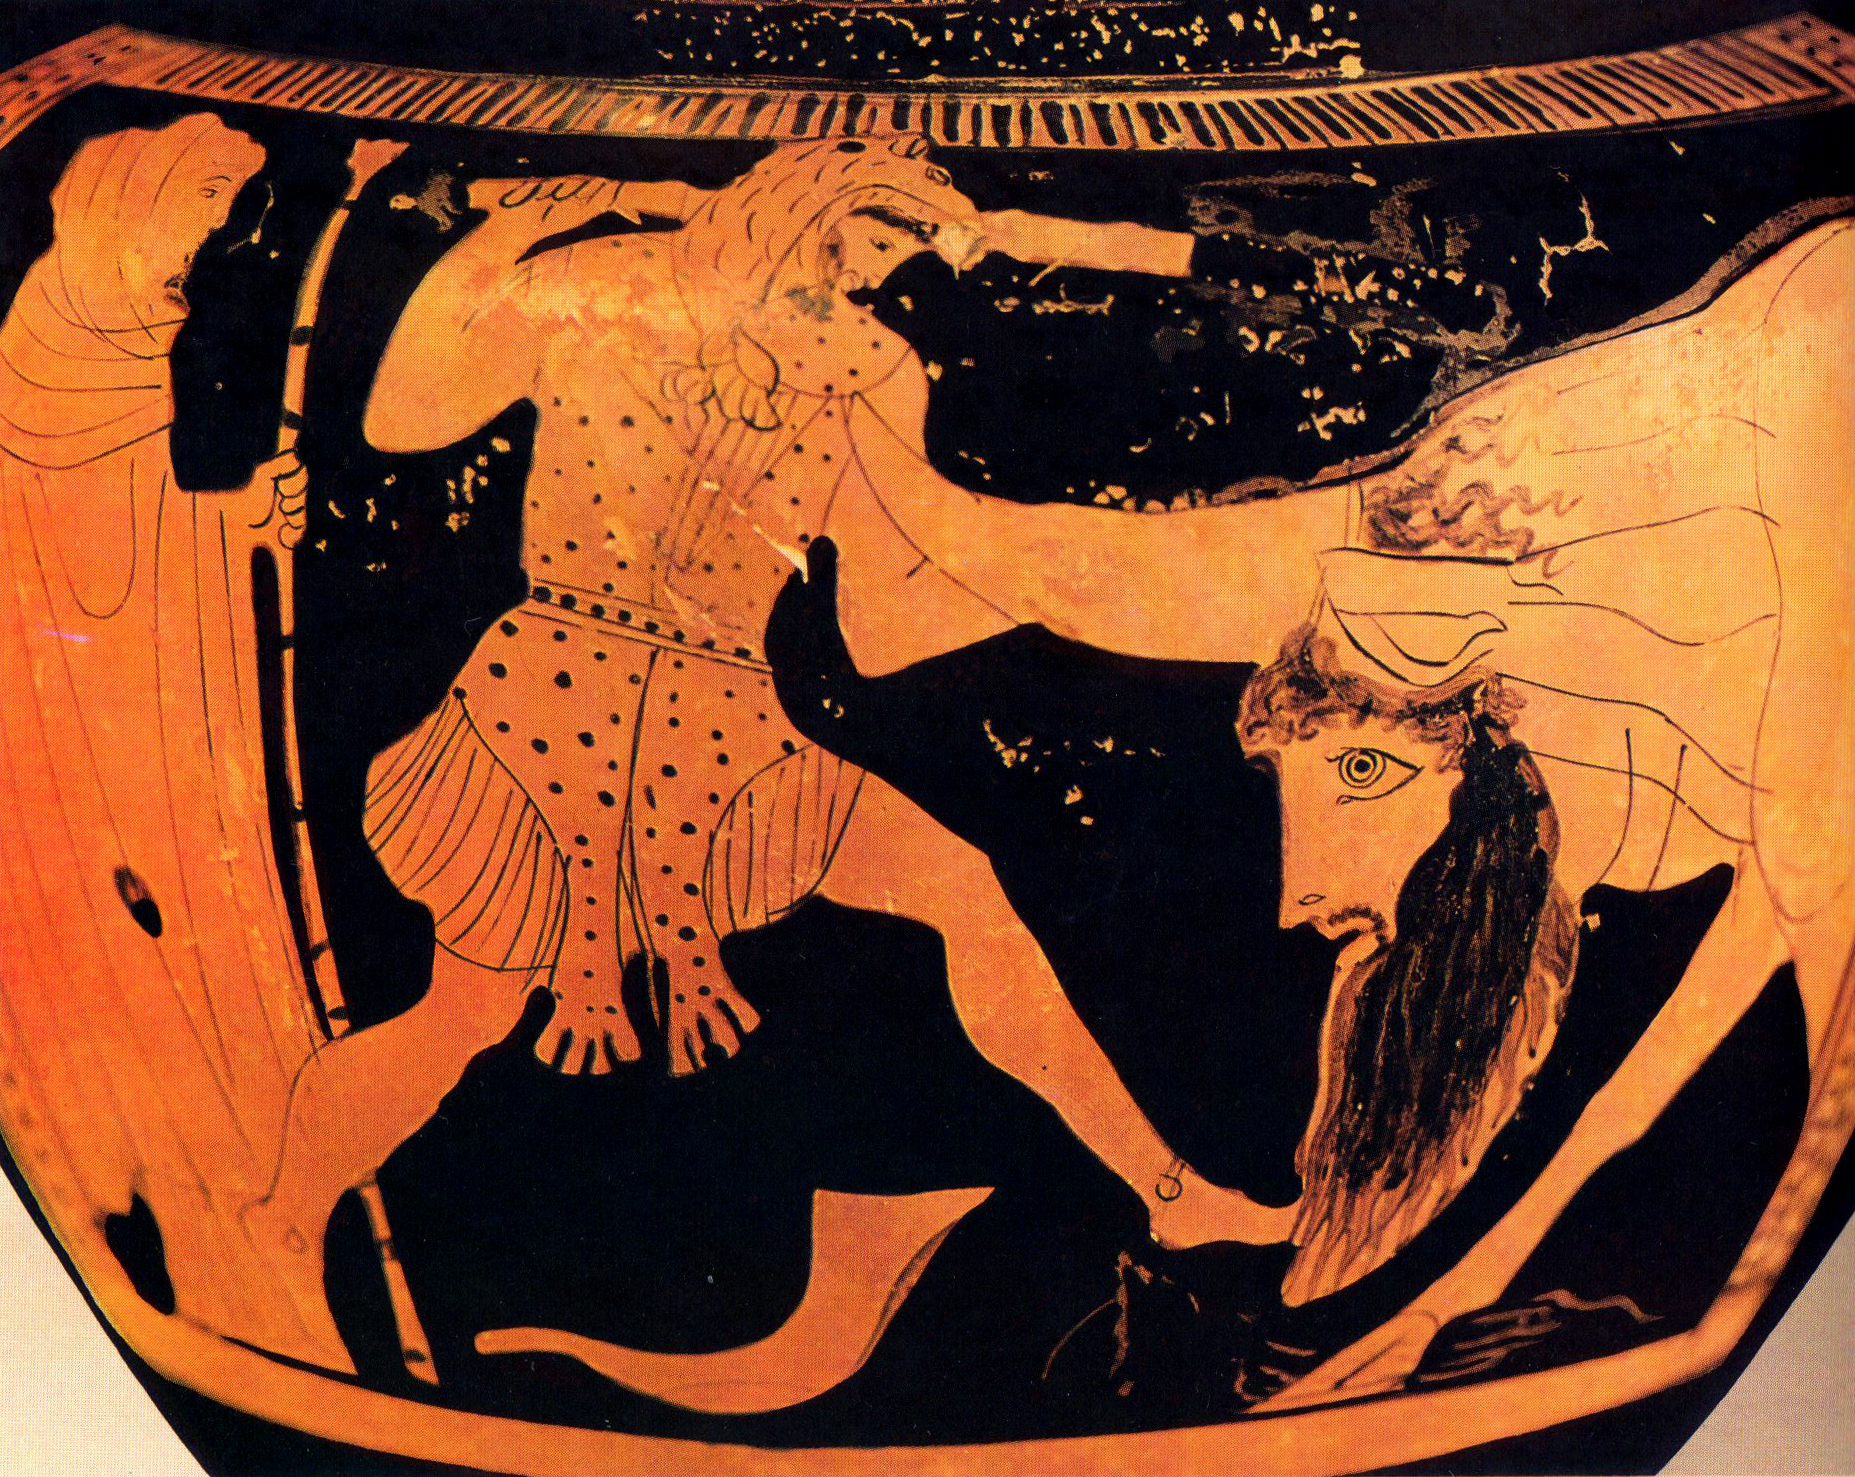 Τα δέκα άλυτα μυστήρια της αρχαίας Ελλάδας – Τι συμβαίνει με τη Χαμένη Ατλαντίδα και τον λαβύρινθο του Μινώταυρου;